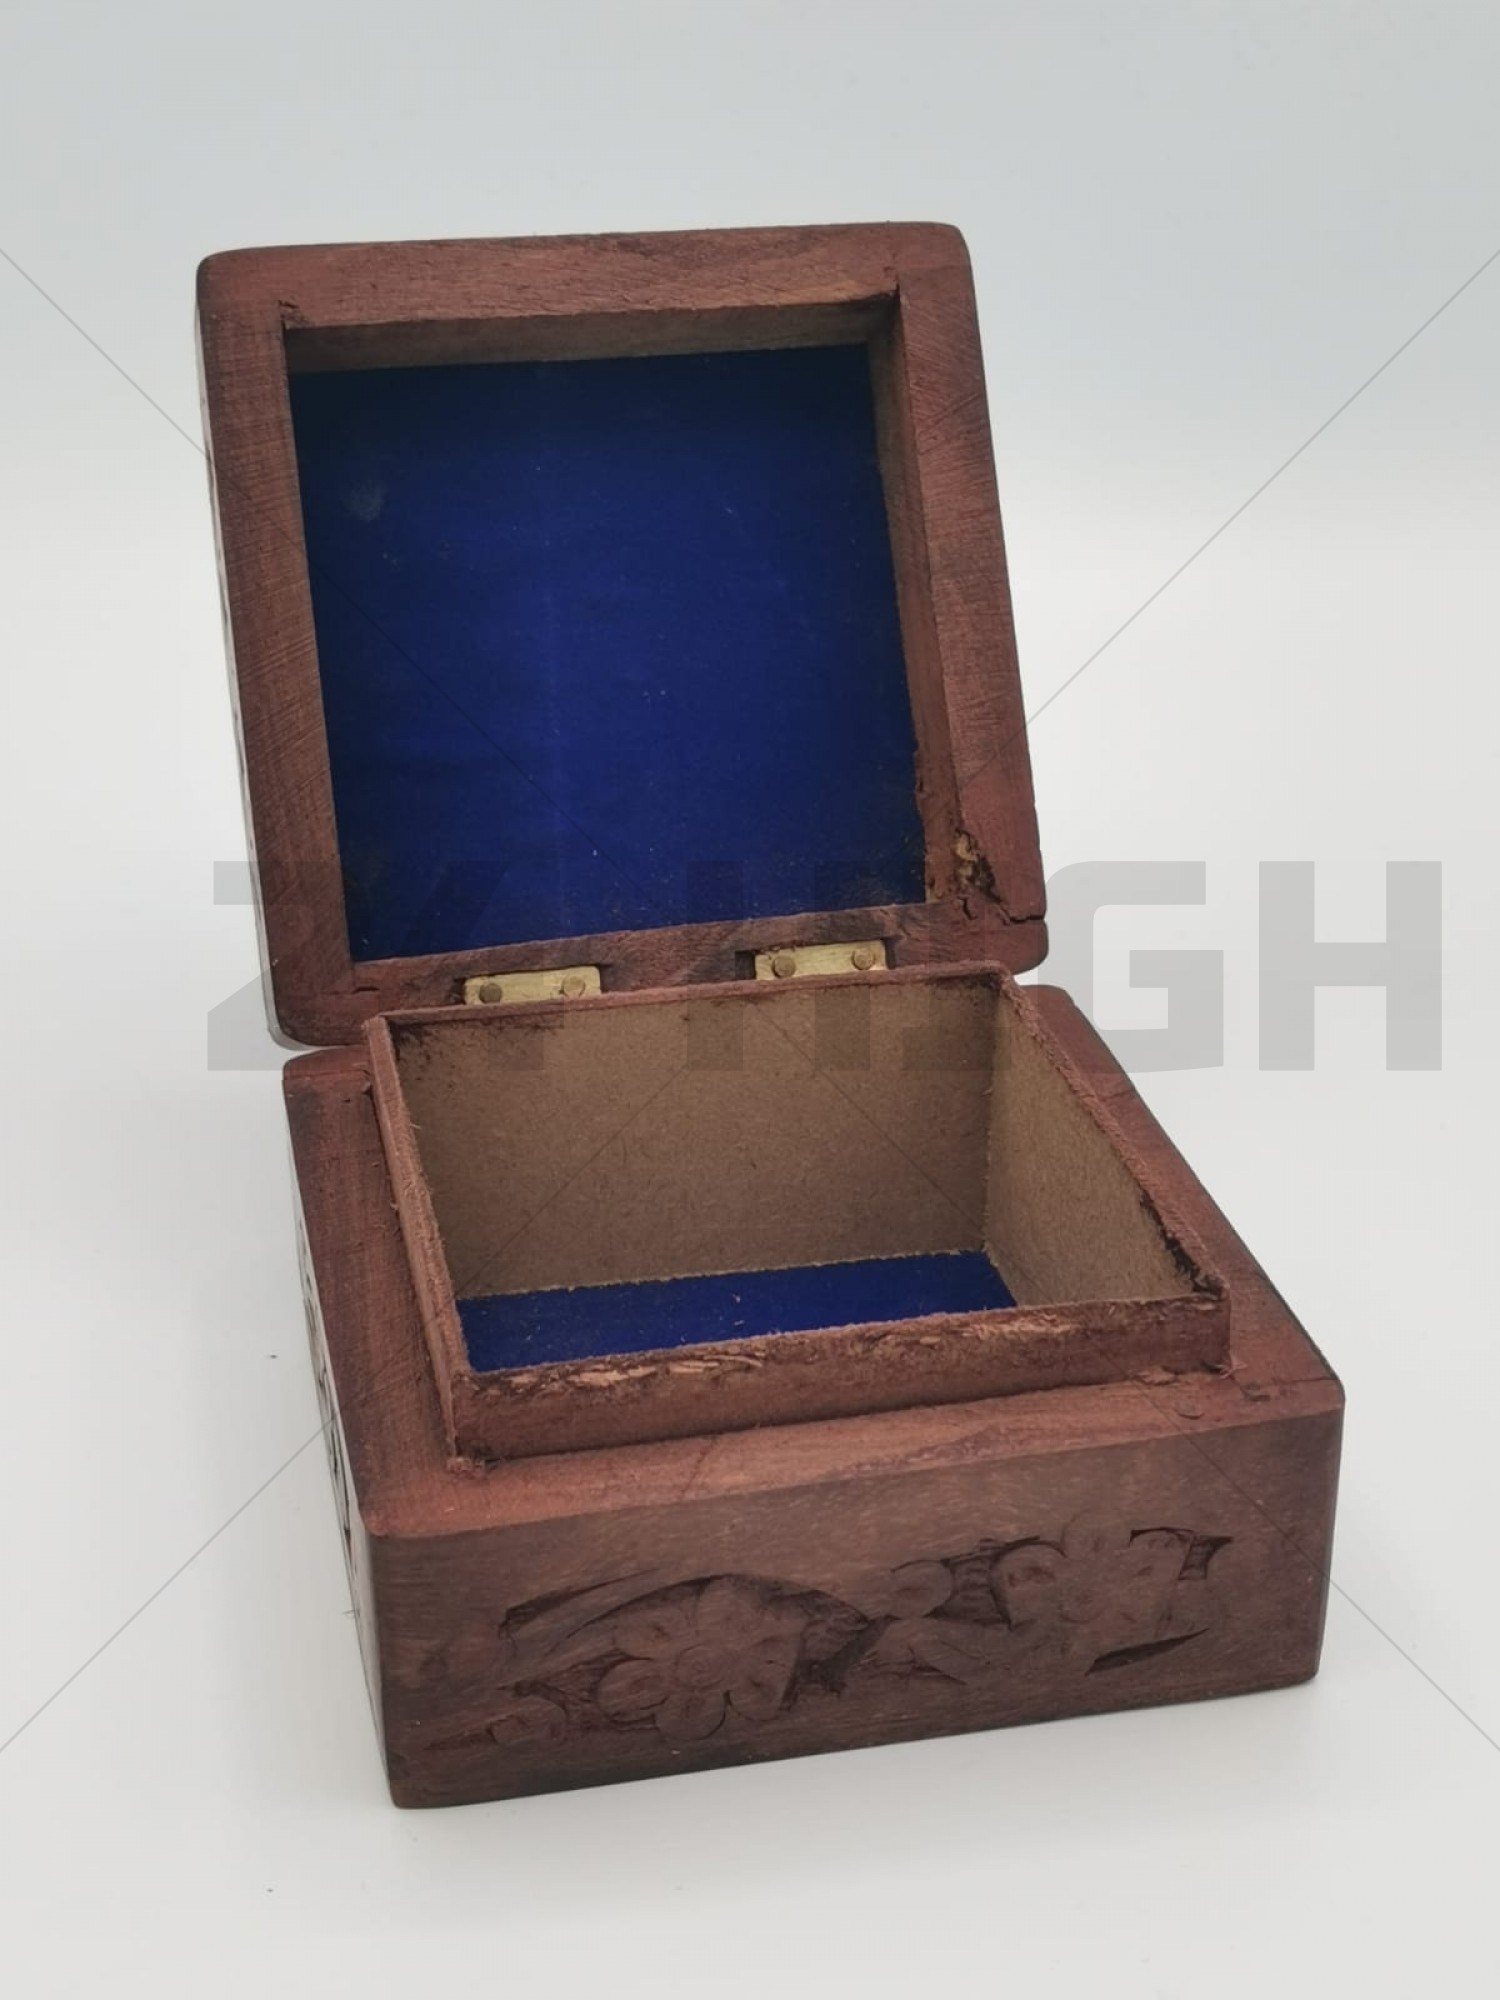 Wood Box With Leaf (11 x 11 x 6 cm)